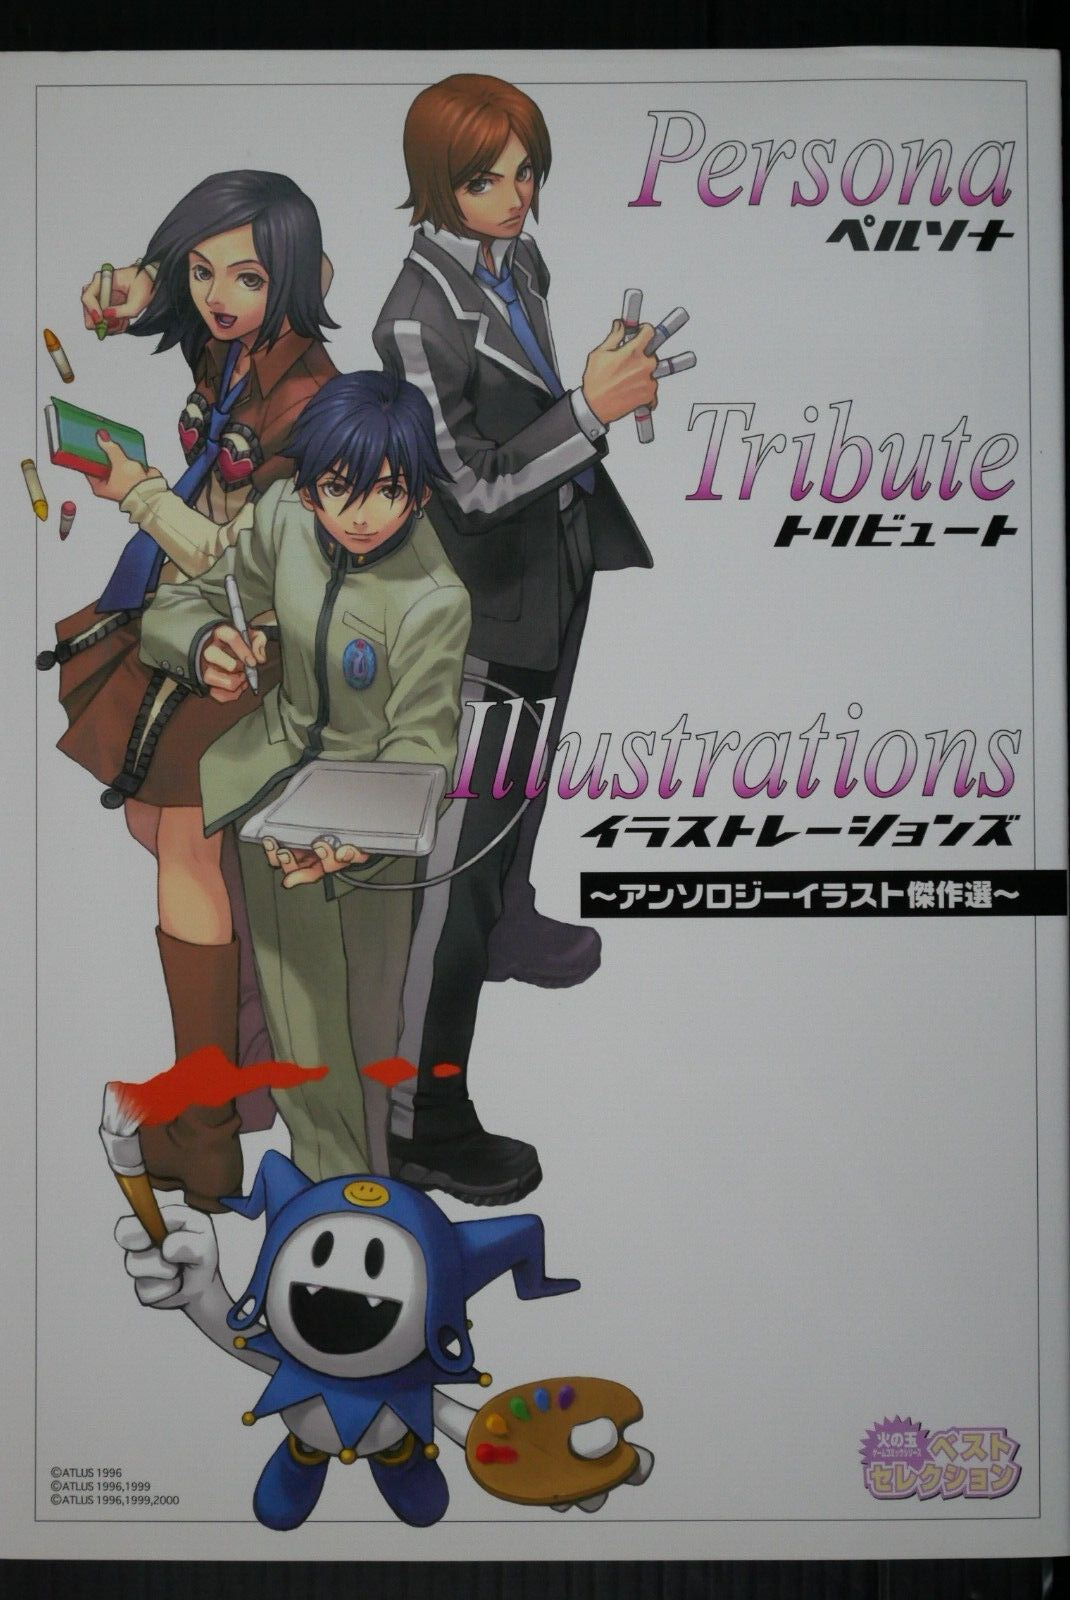 Persona Tribute Illustrations (Shirow Miwa, Minako Iwasaki & Other Art Book)